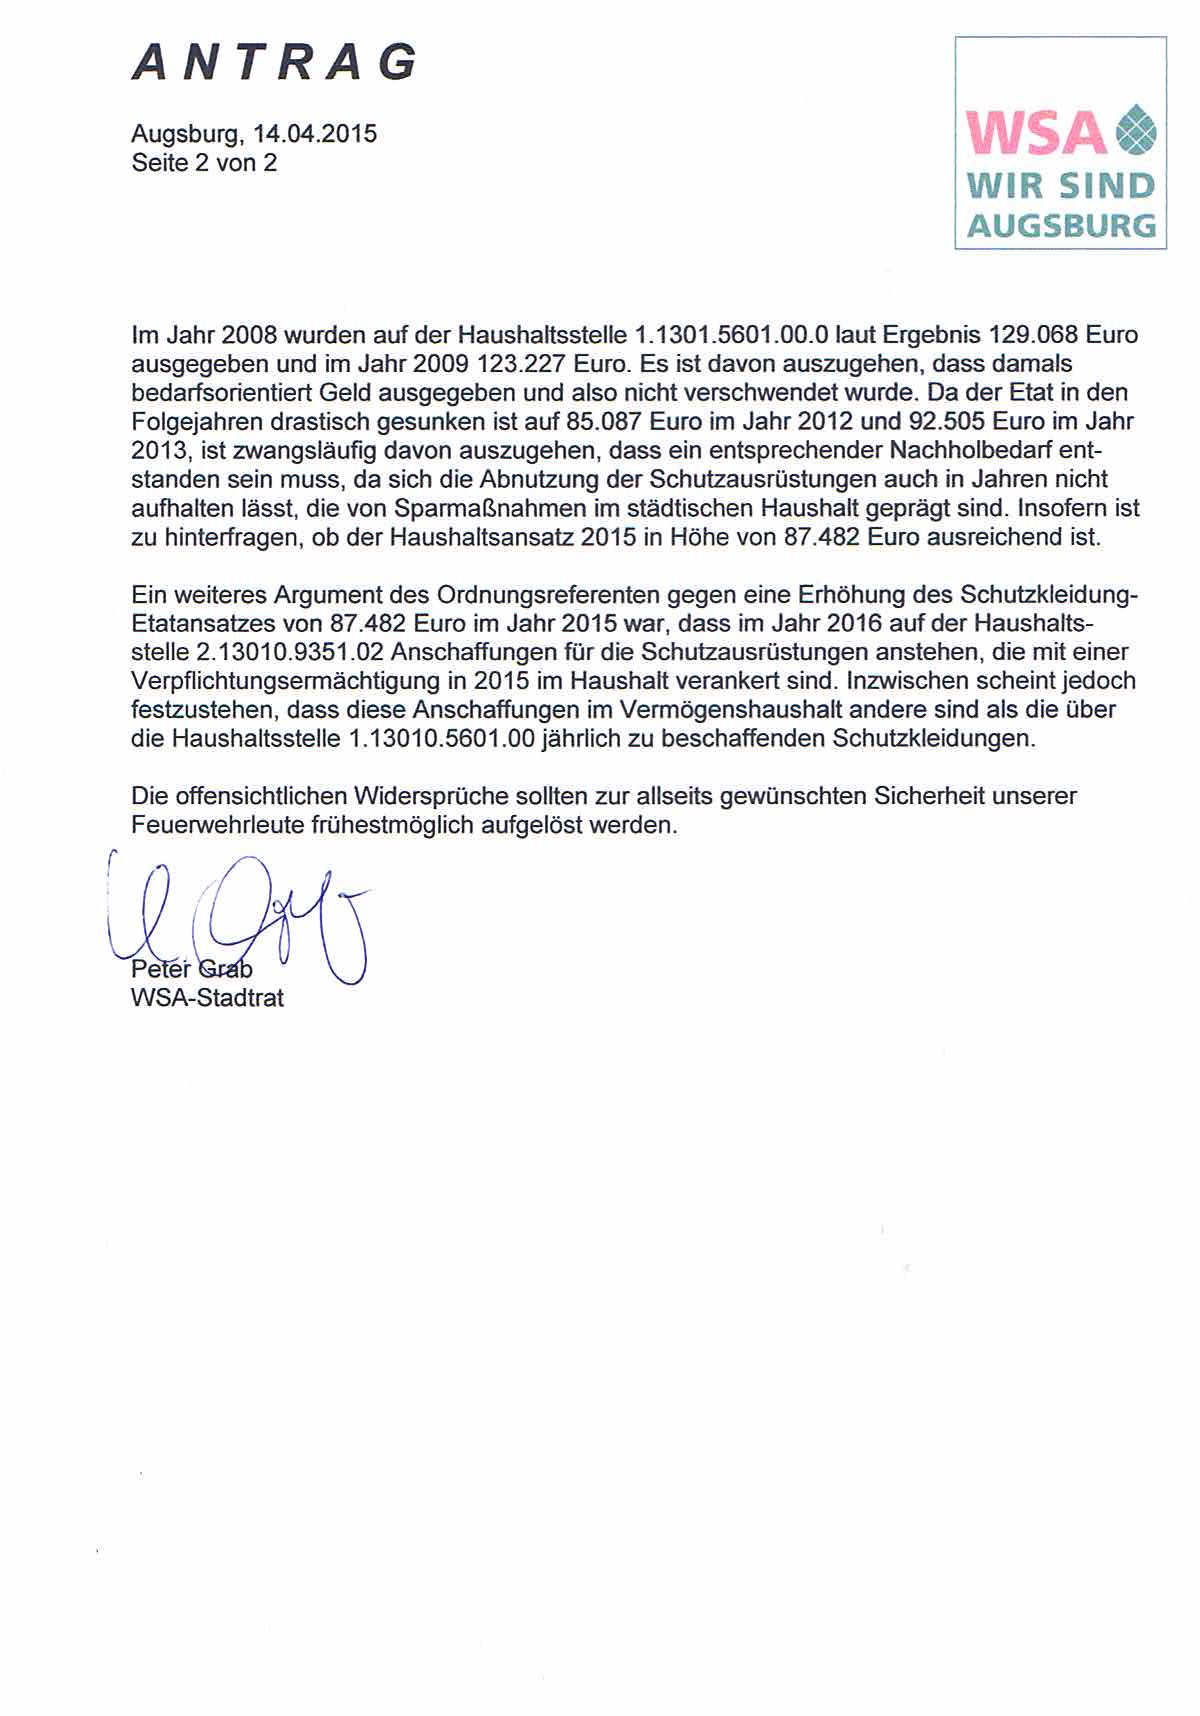 WSA-Antrag vom 14.04.2015 zur Schutzausrüstung der Augsburger Feuerwehren, Seite 2